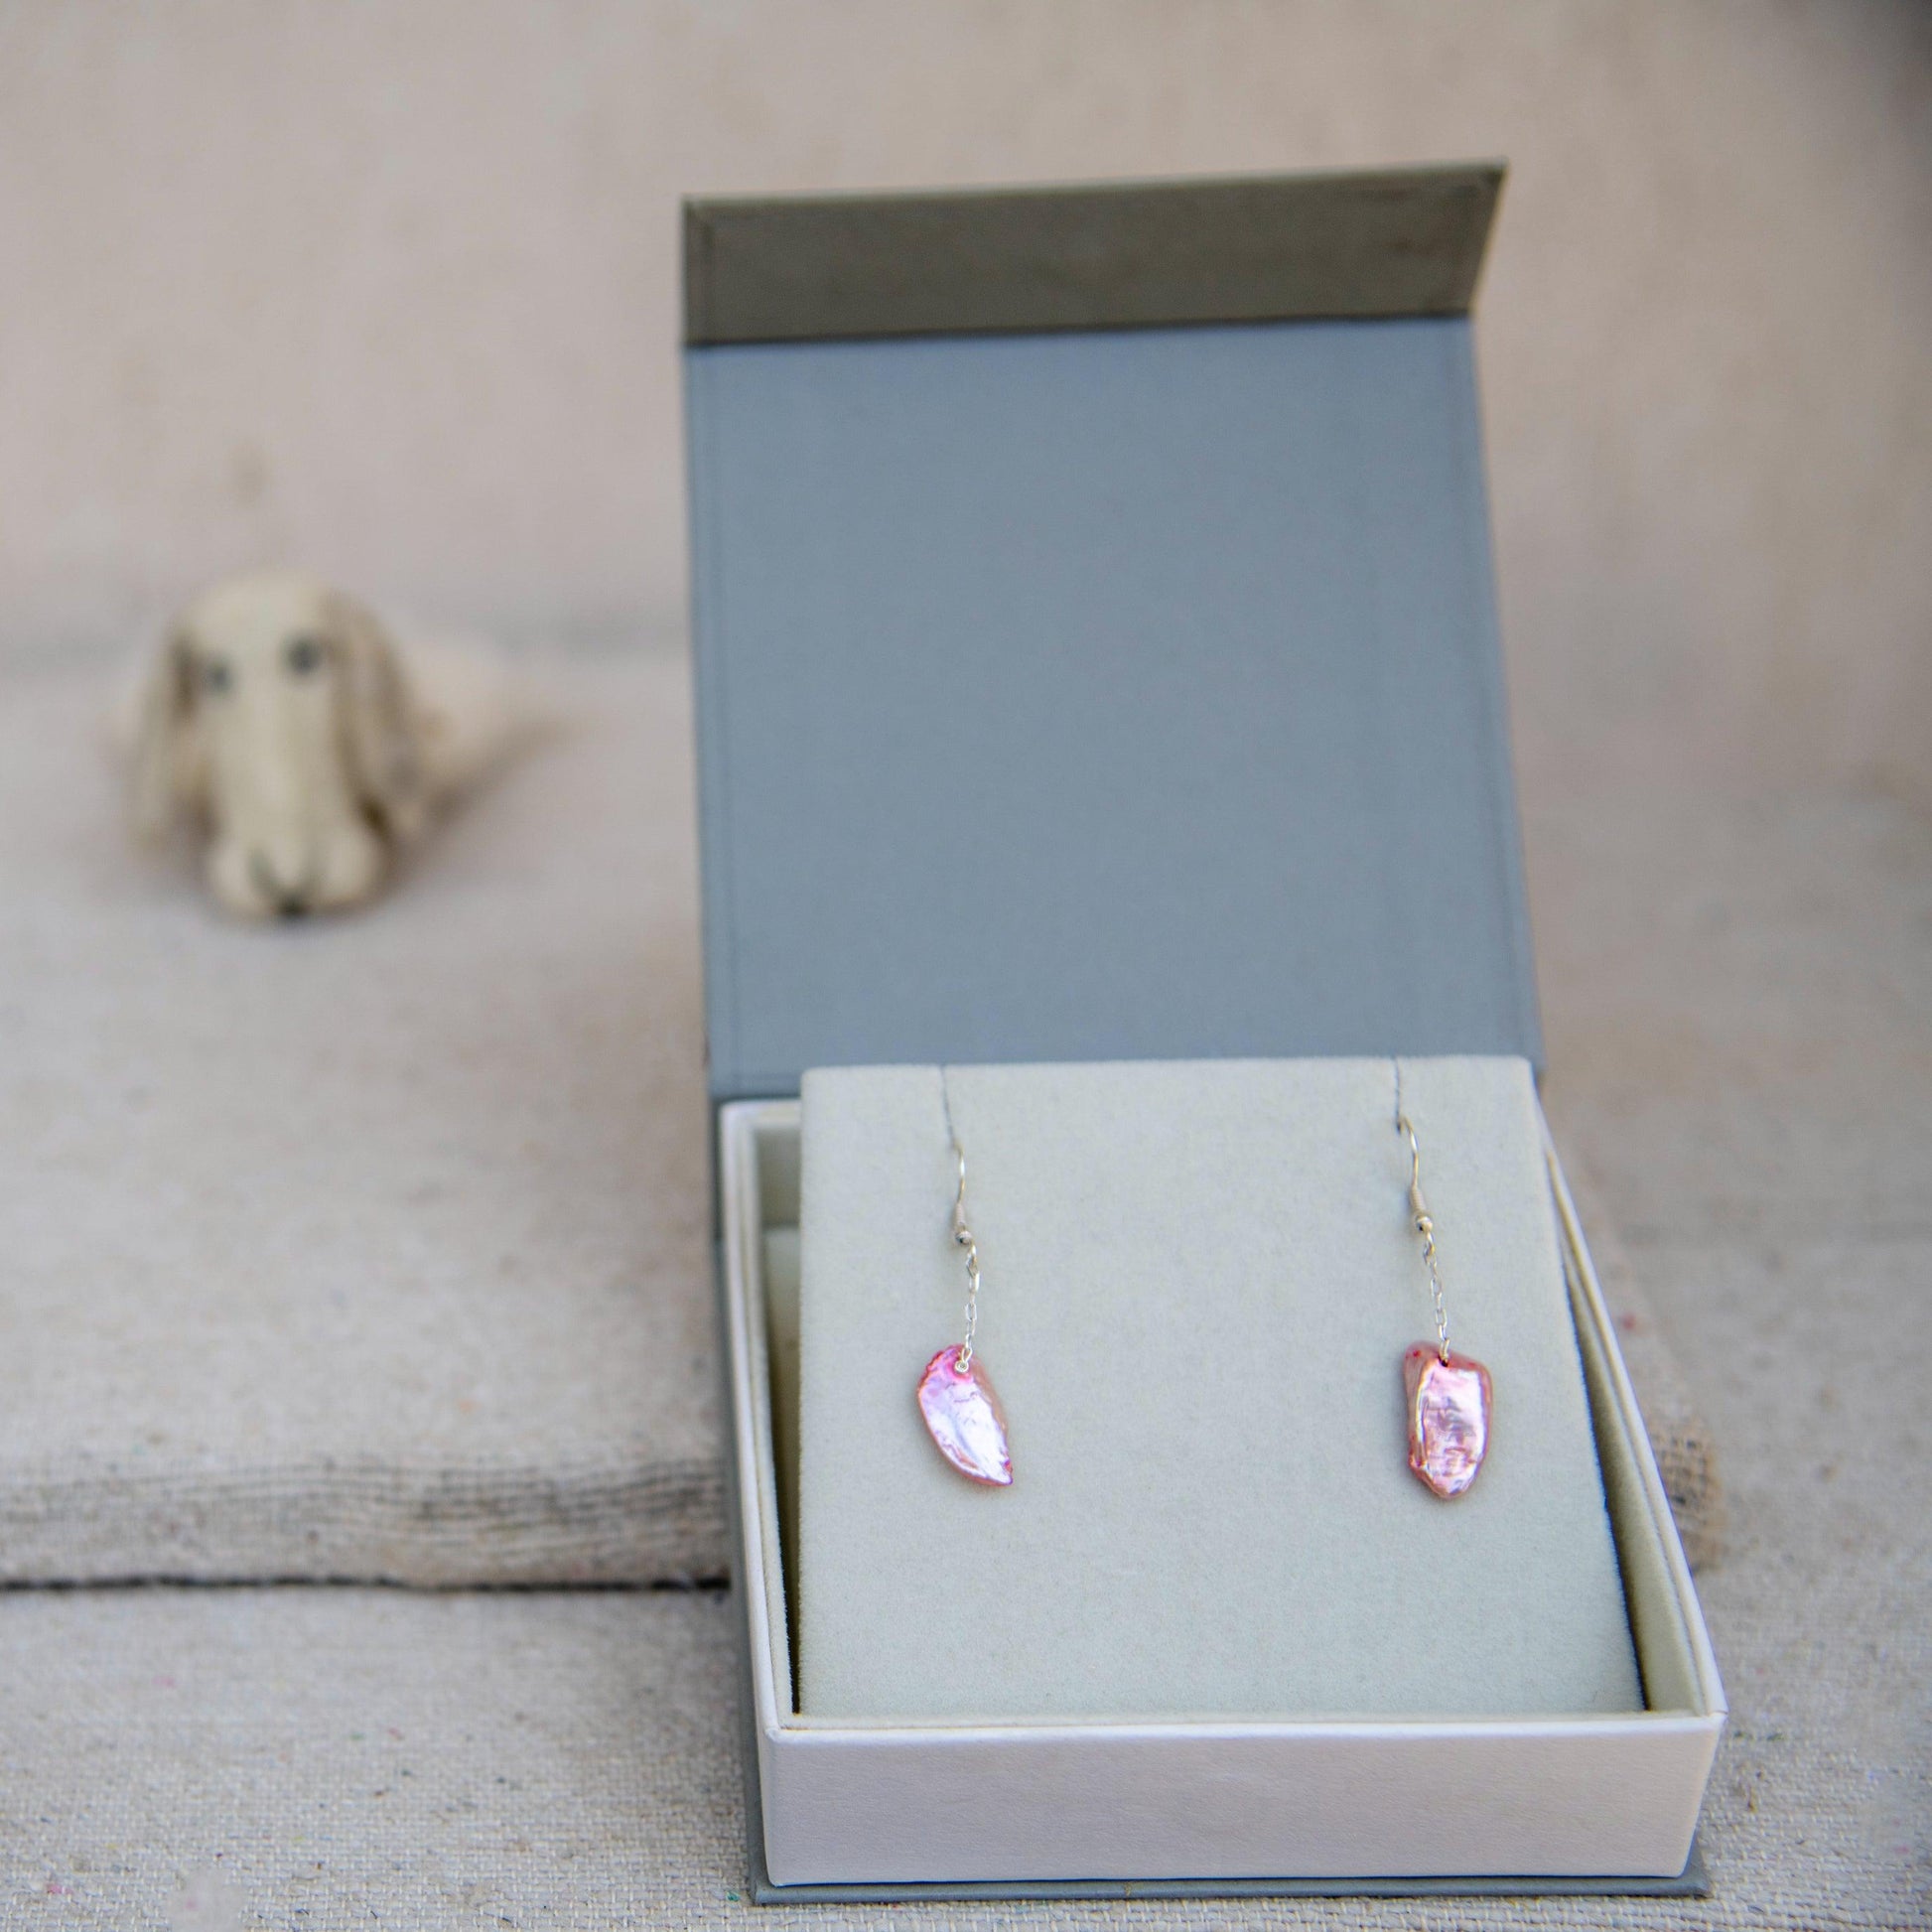 Pink Pearl Silver Plated Dangler Hook Earring - DeKulture DKW-1455-SEJ